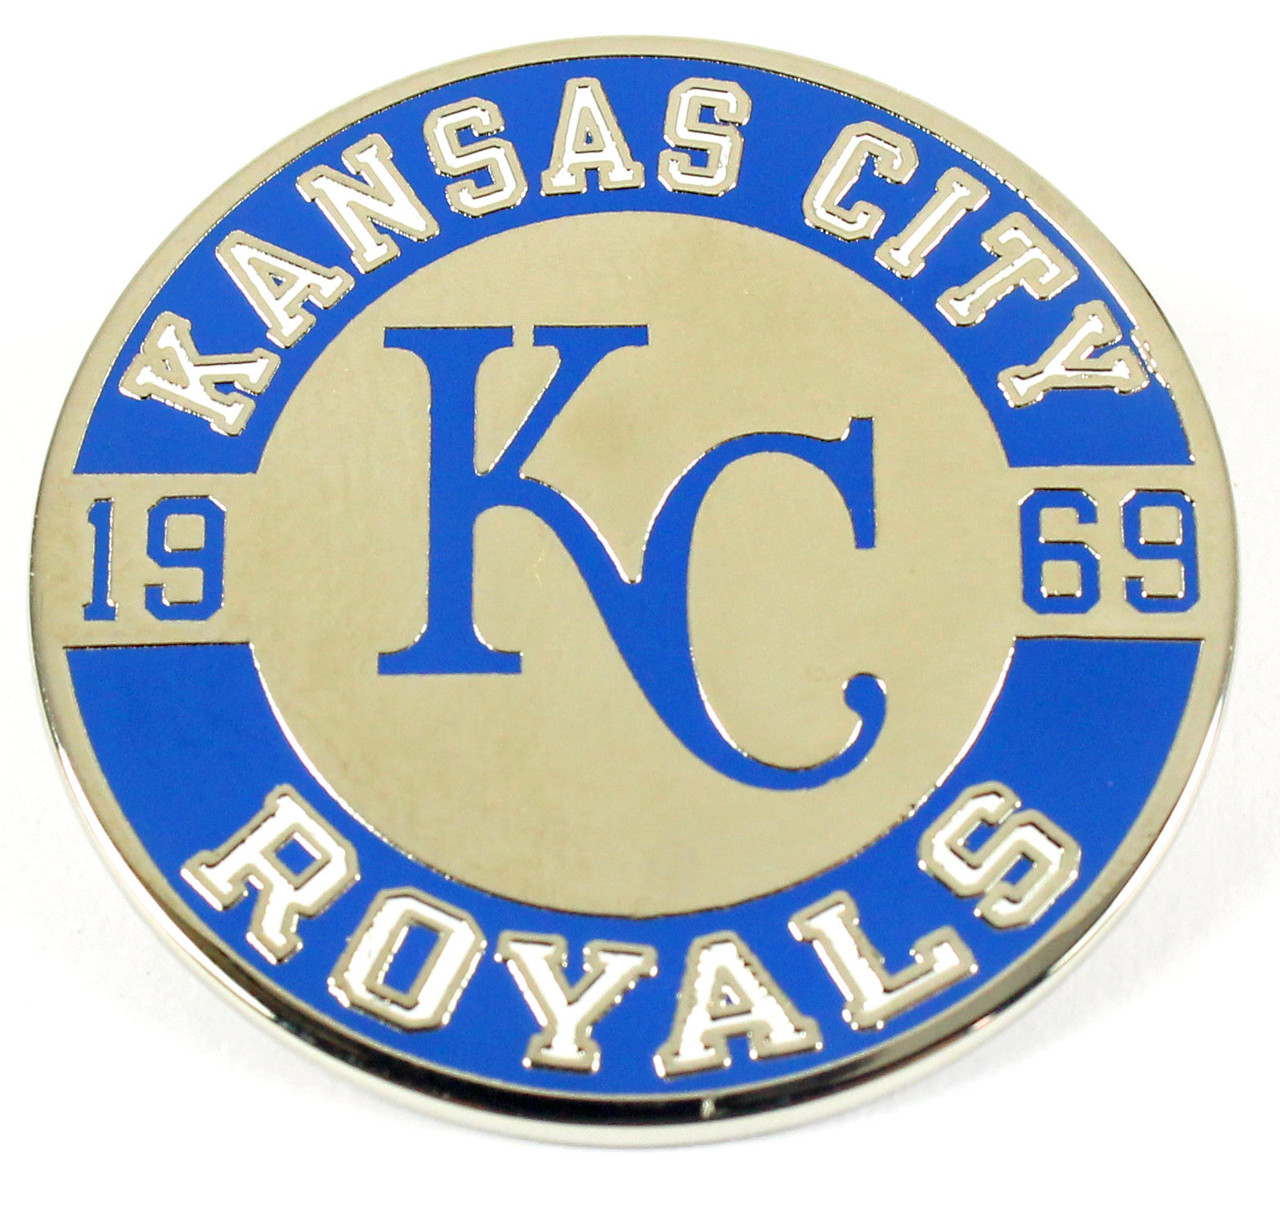 WinCraft (Winona) Kansas City Royals Established 1969 Circle Pin